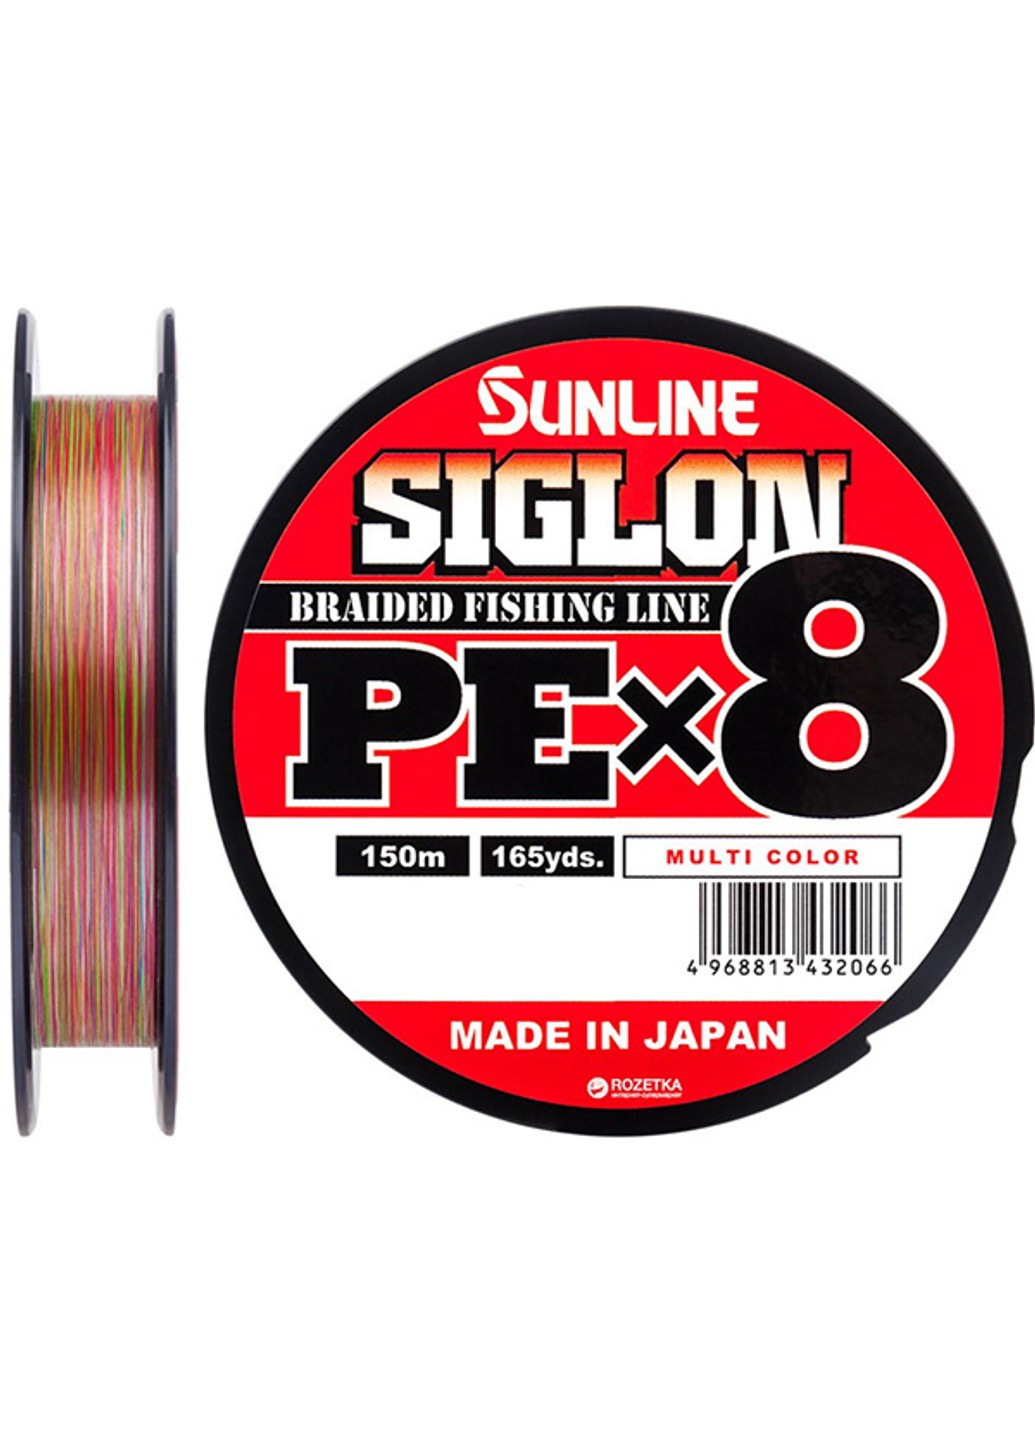 1658-09-96 Шнур Siglon PE х8 150m (мульти.) # 0.3 / 0.094mm 5lb / 2.1kg Sunline (252468231)